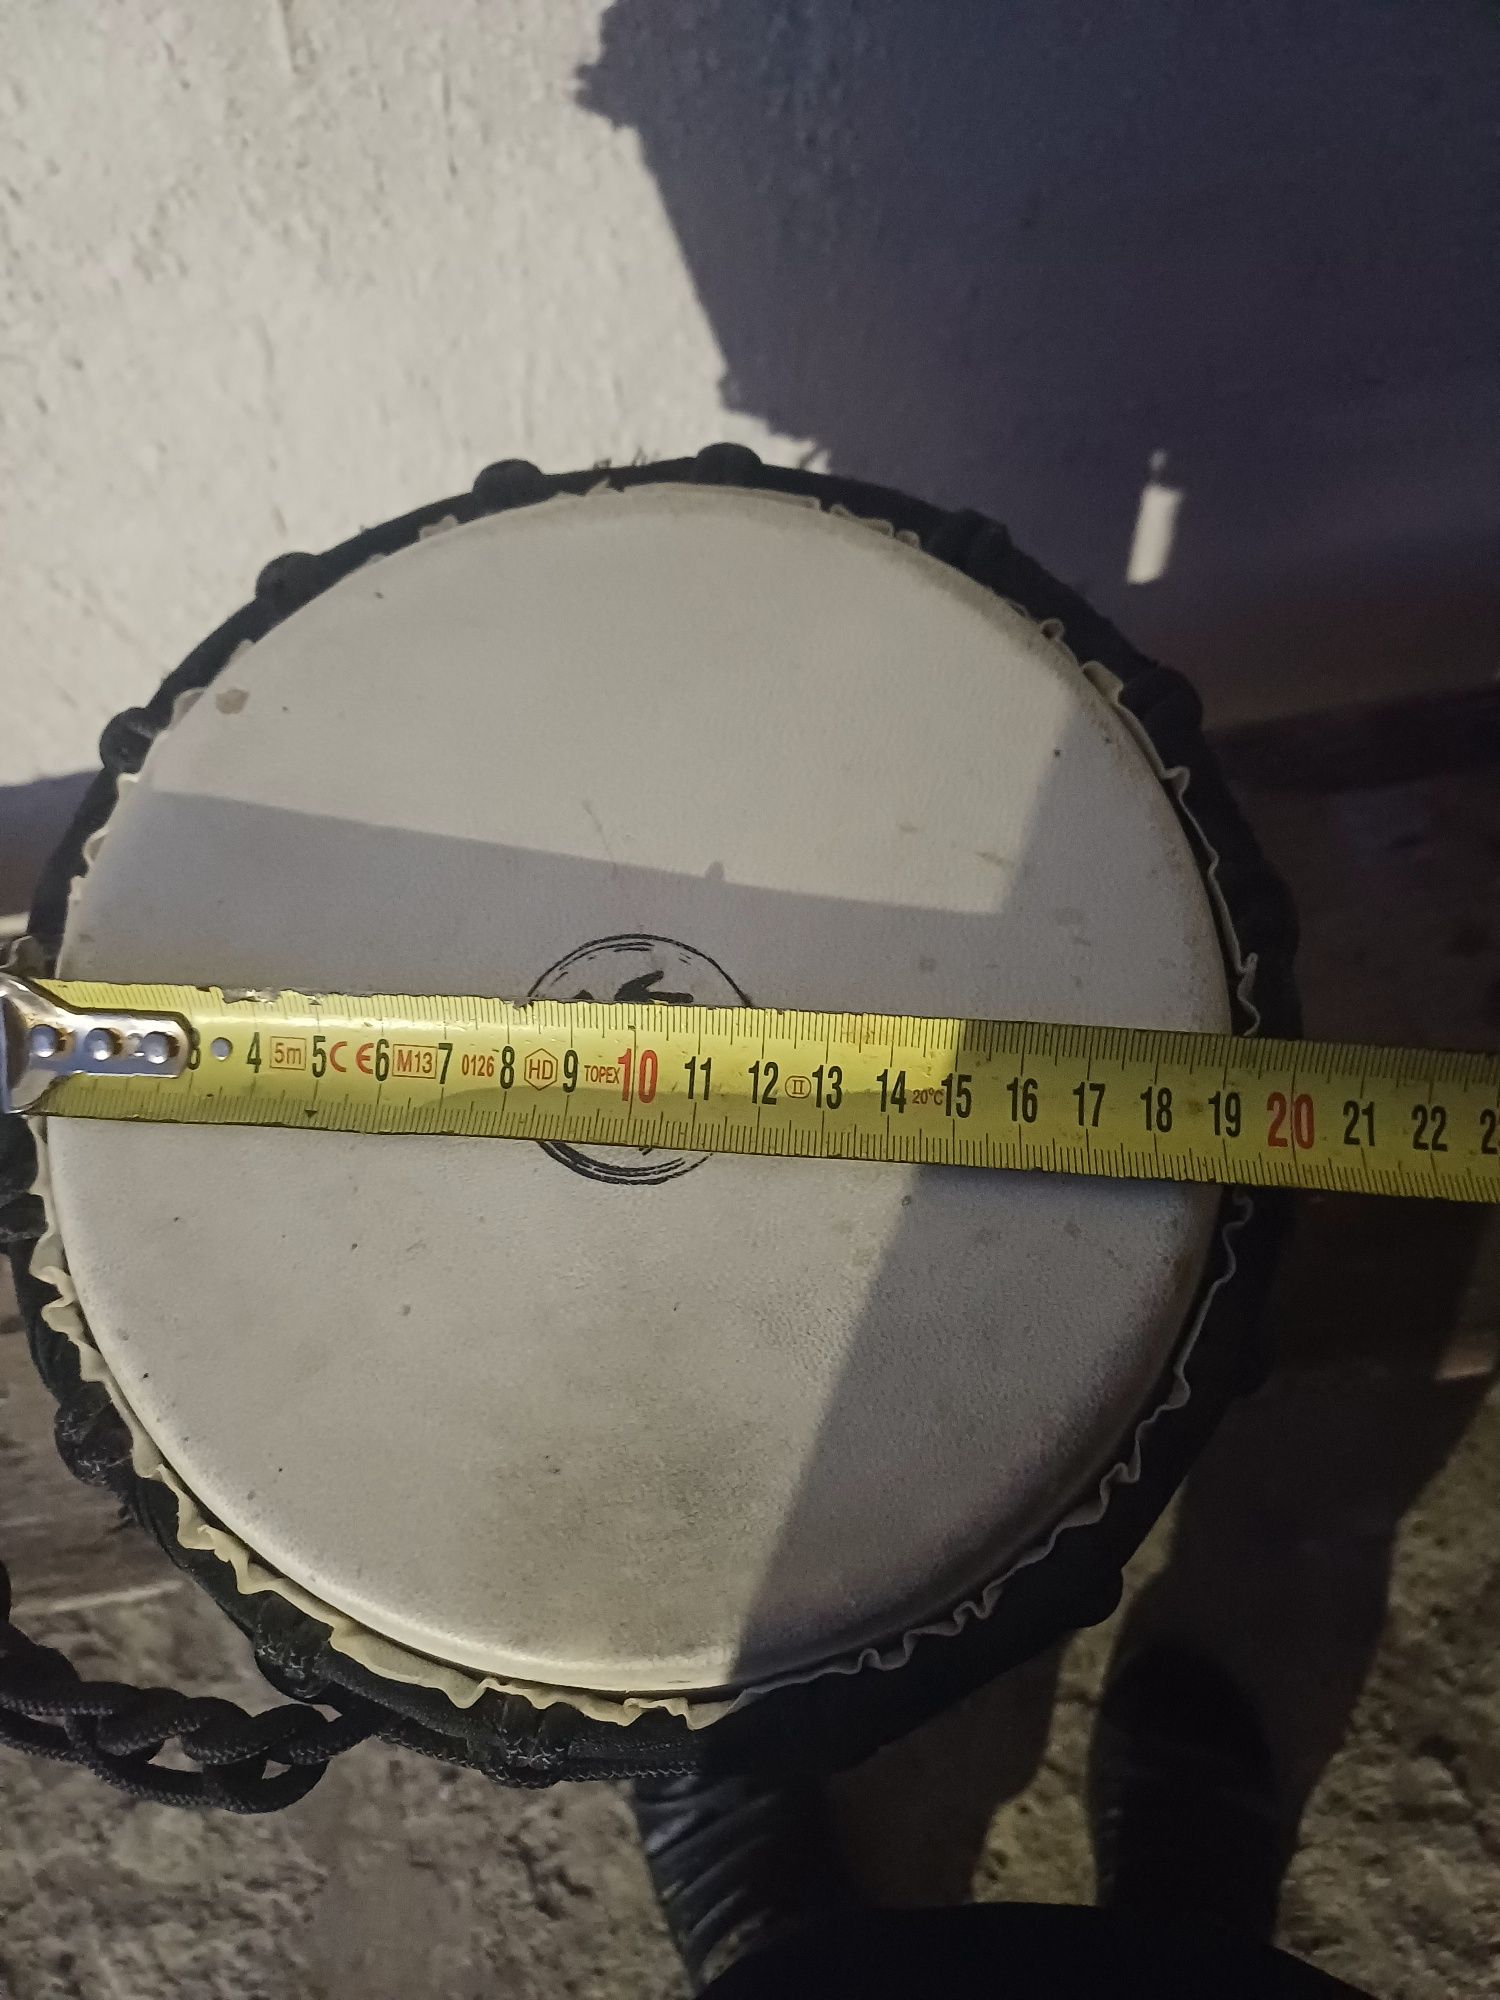 Барабан джембе 40*20 см почти новый